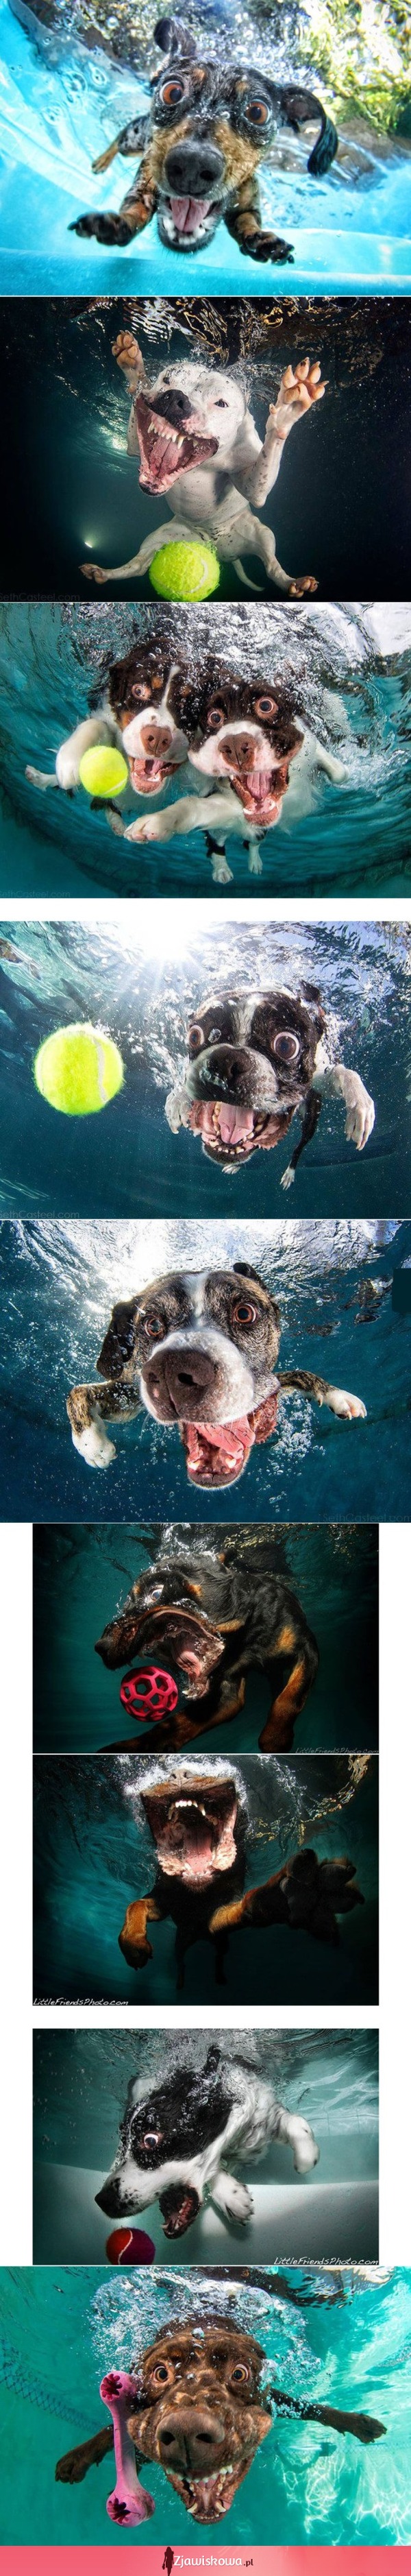 Śmieszne zdjęcia psów pod wodą ;)